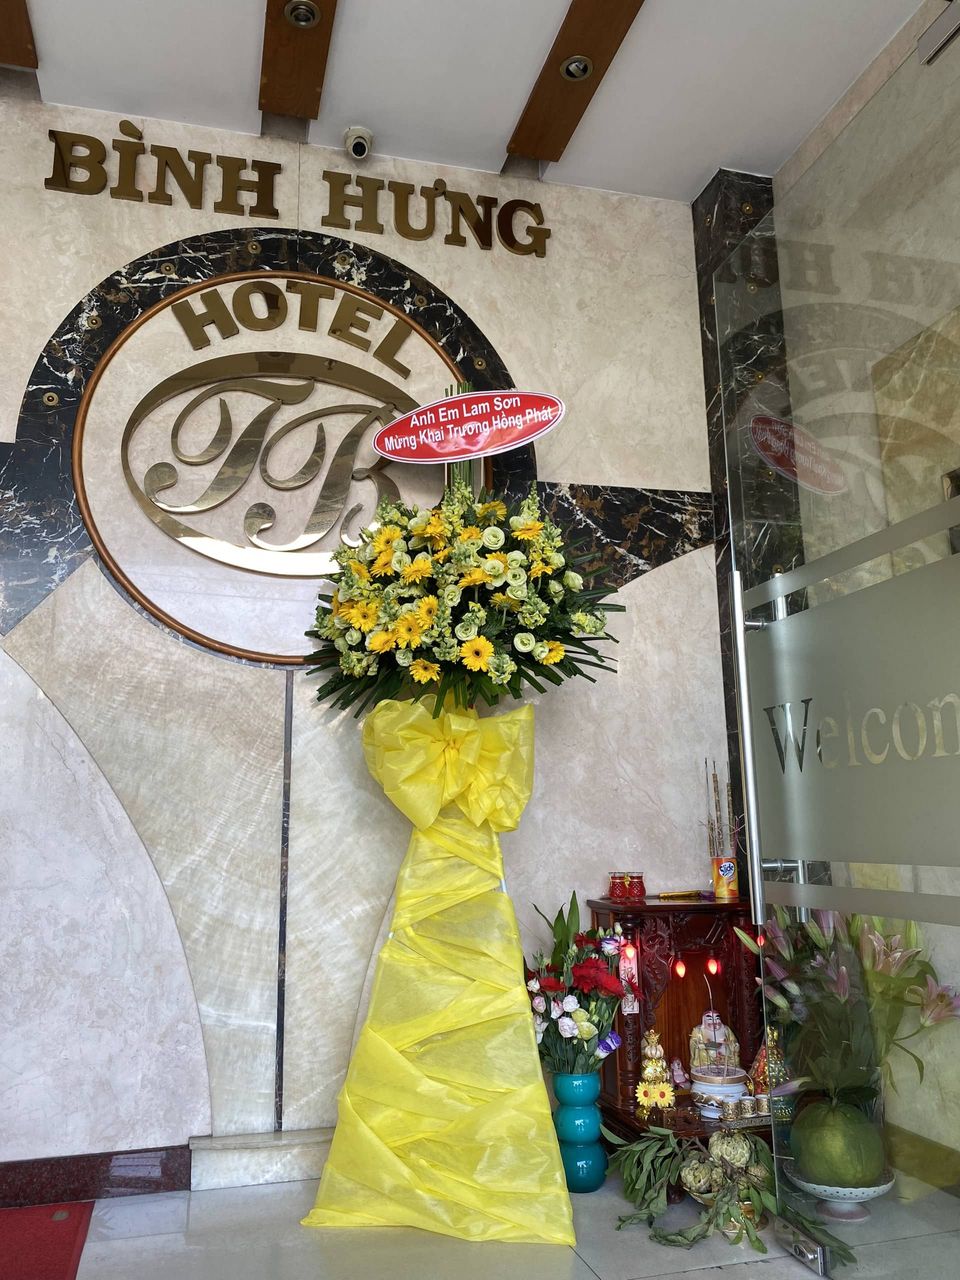 BÌNH HƯNG HOTEL